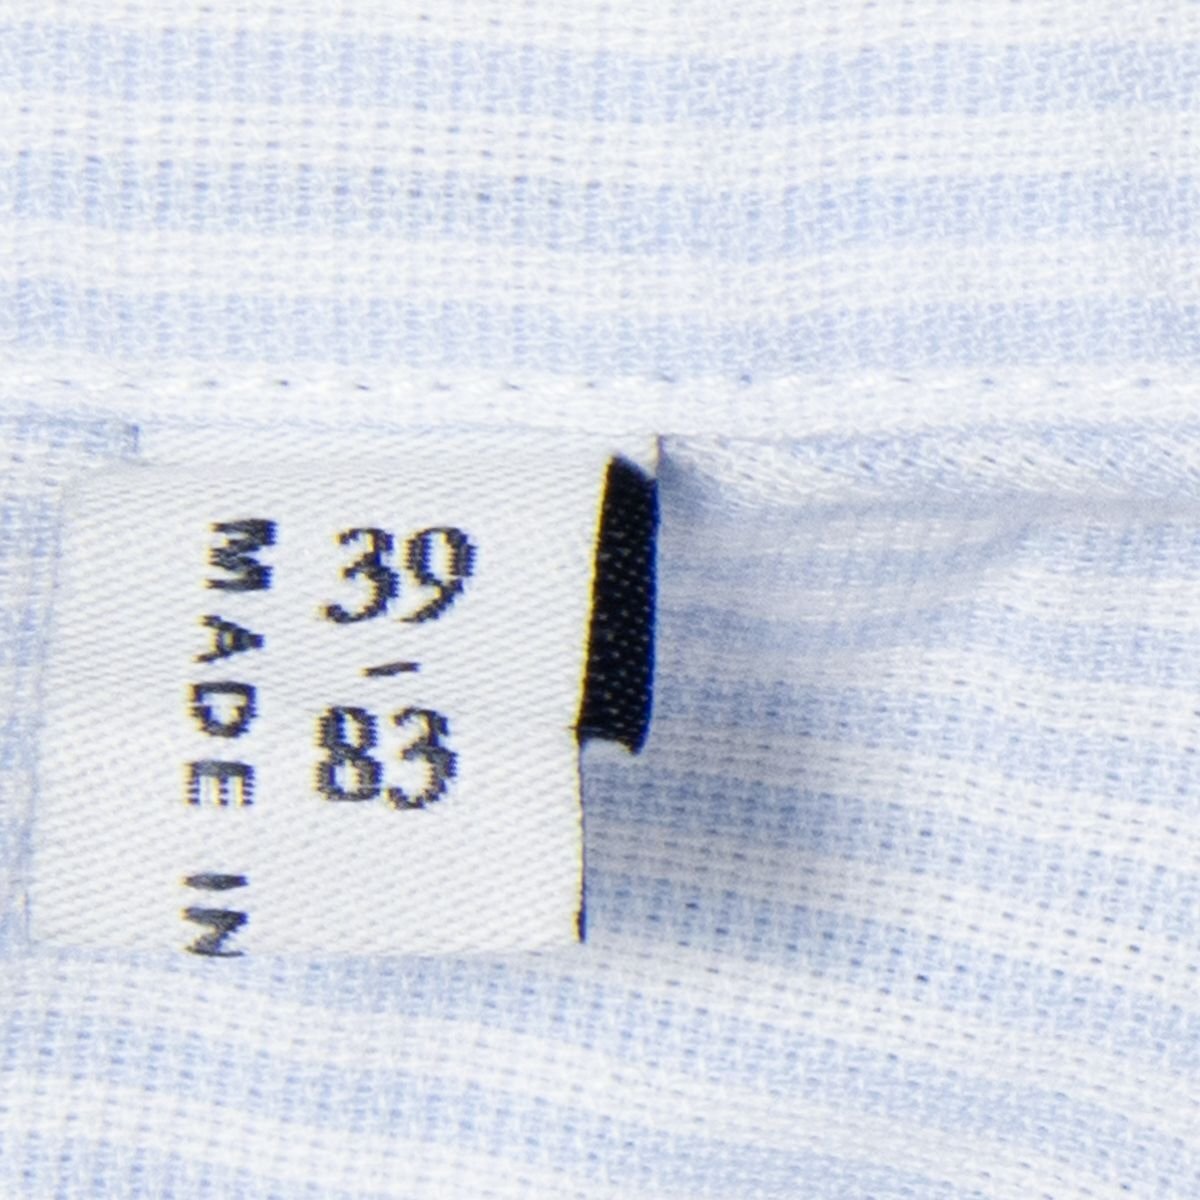 メール便◯ Maker's Shirt鎌倉 サイズ39 長袖 ワイドカラー シャツ ストライプ 白/ホワイト 水色/ライトブルー コットン混 メンズ 紳士_画像6